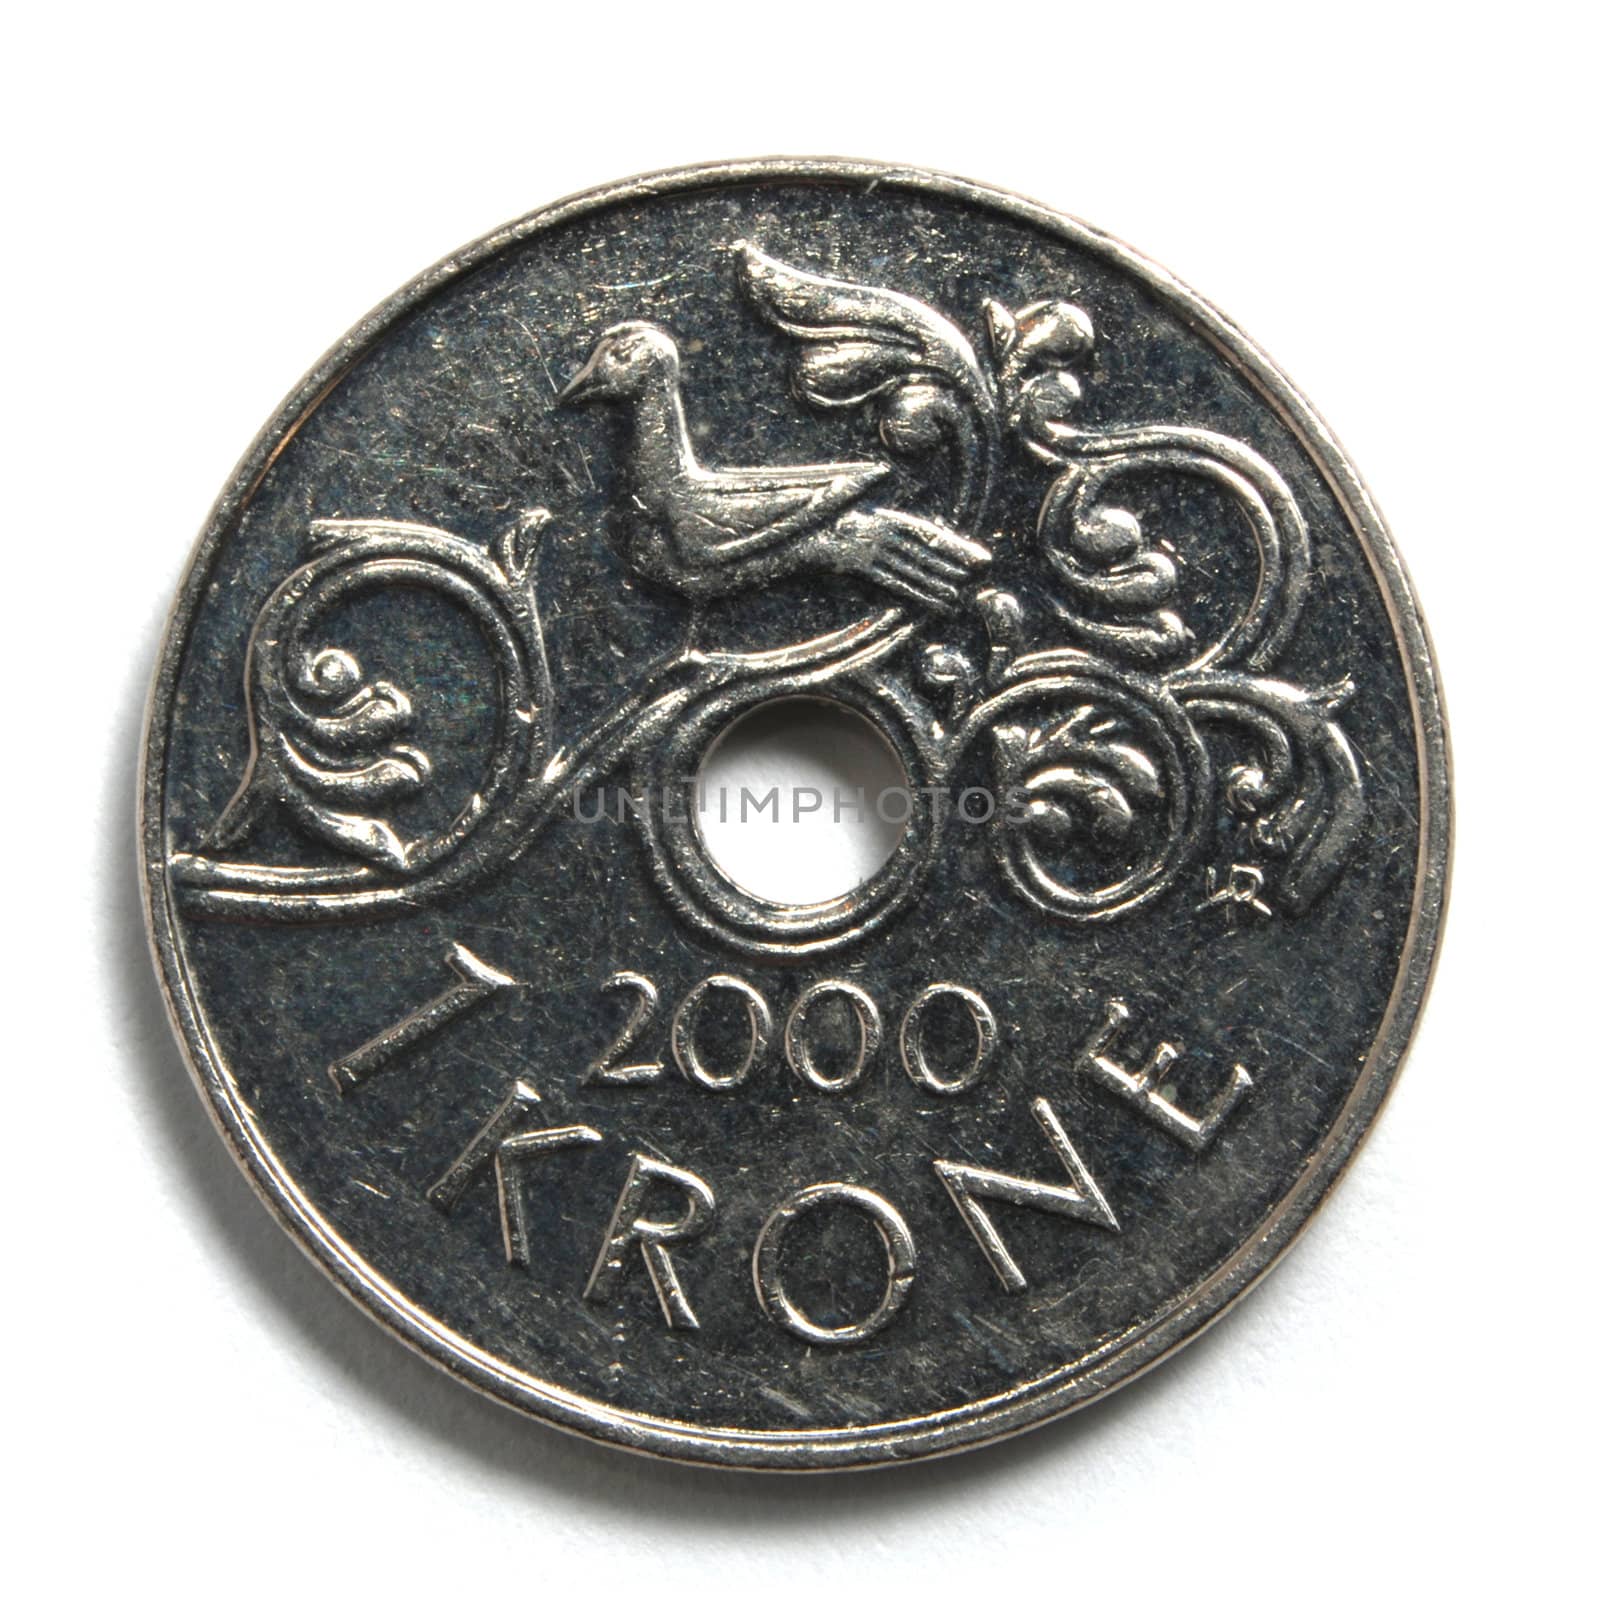 Norwegian krone by Gjermund